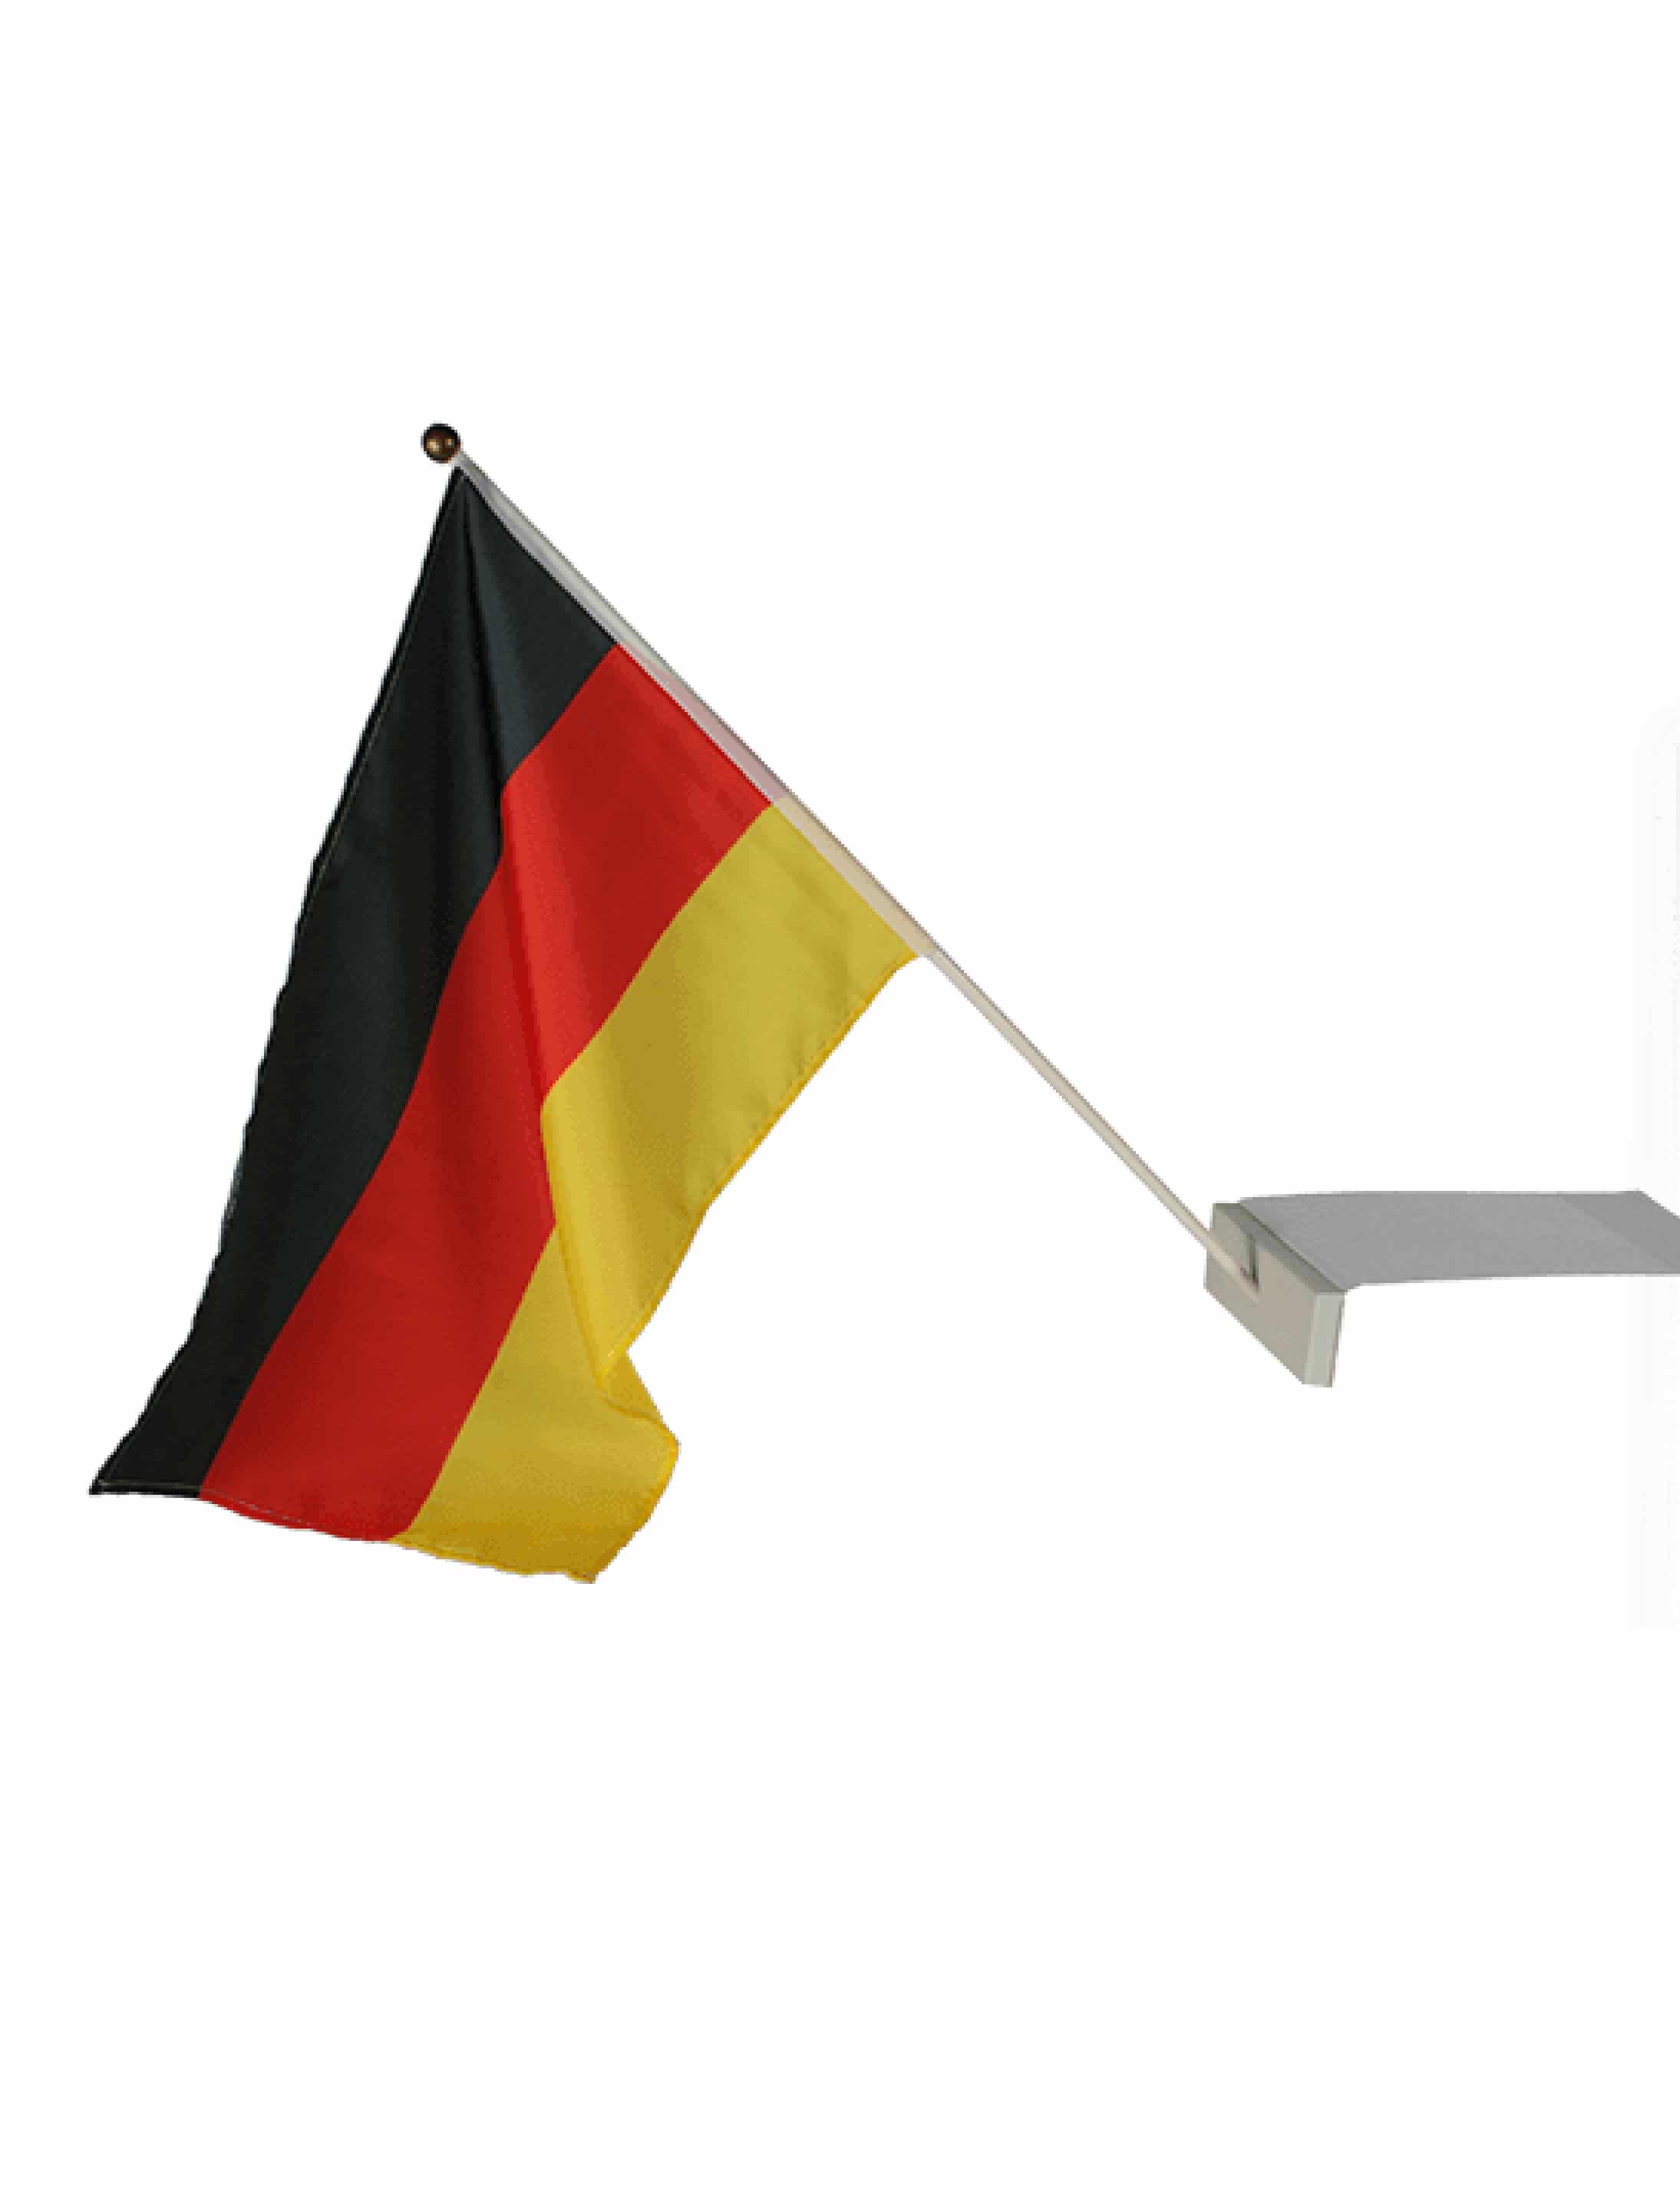 Flagge Deutschland 30x46cm am Stab jetzt bestellen » Deiters